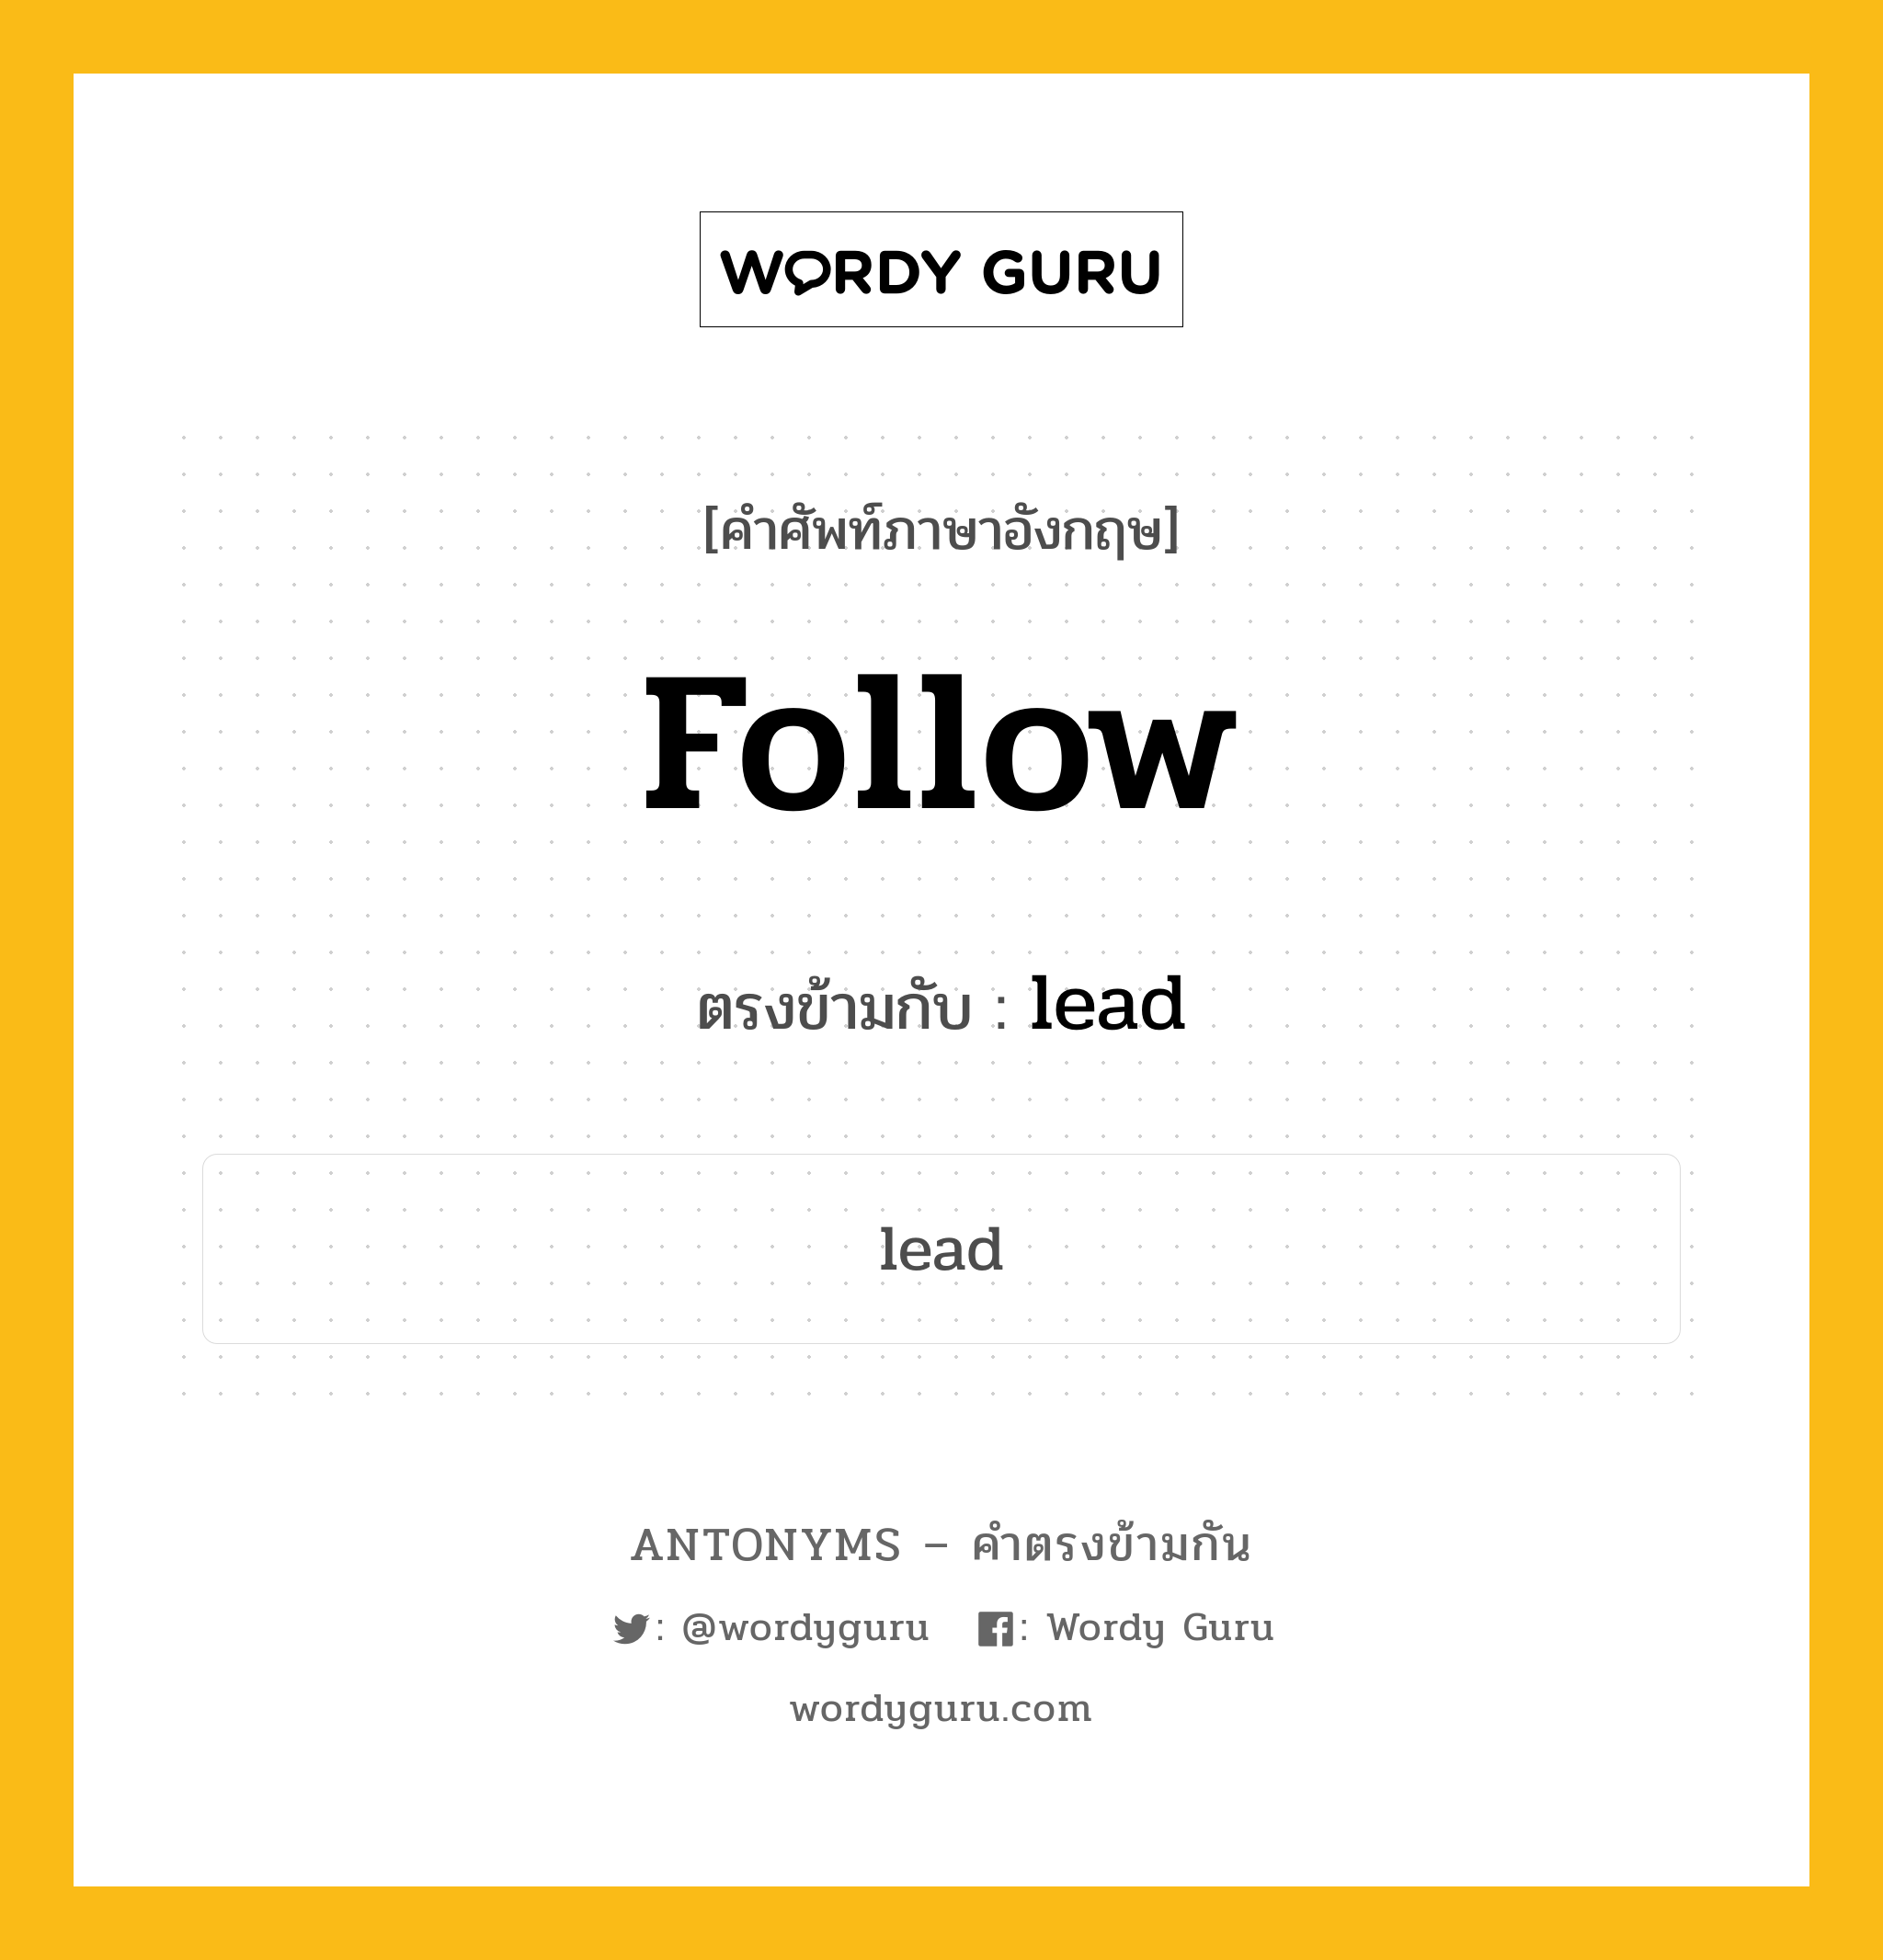 follow เป็นคำตรงข้ามกับคำไหนบ้าง?, คำศัพท์ภาษาอังกฤษ follow ตรงข้ามกับ lead หมวด lead